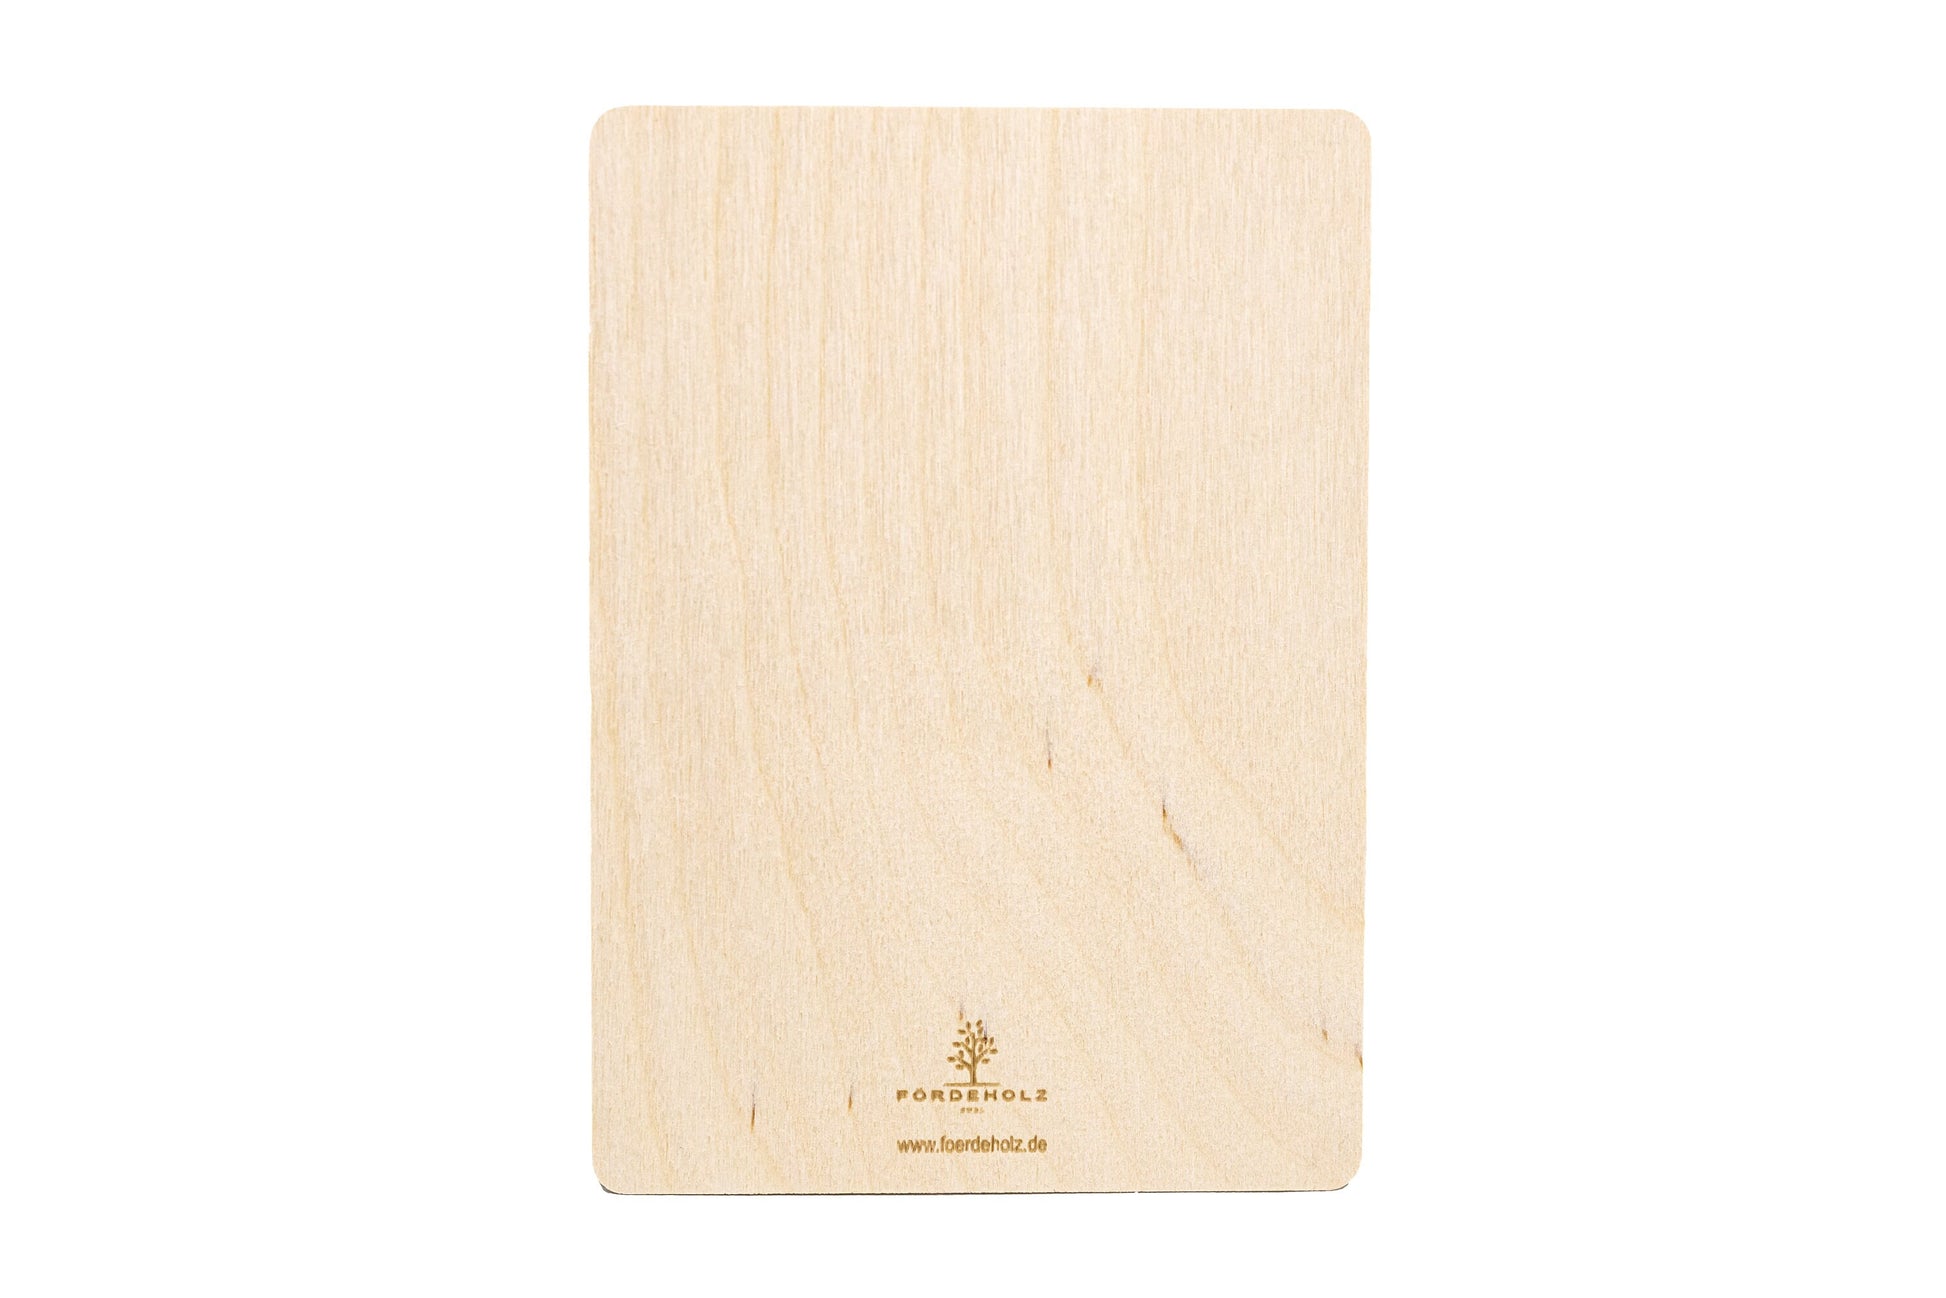 Rubbelkarte aus Holz zum selber beschriften • "Frage an Dich" • Holzpostkarte • Rubbellos • Gutschein • Rubbel Gutschein • 10x14cm